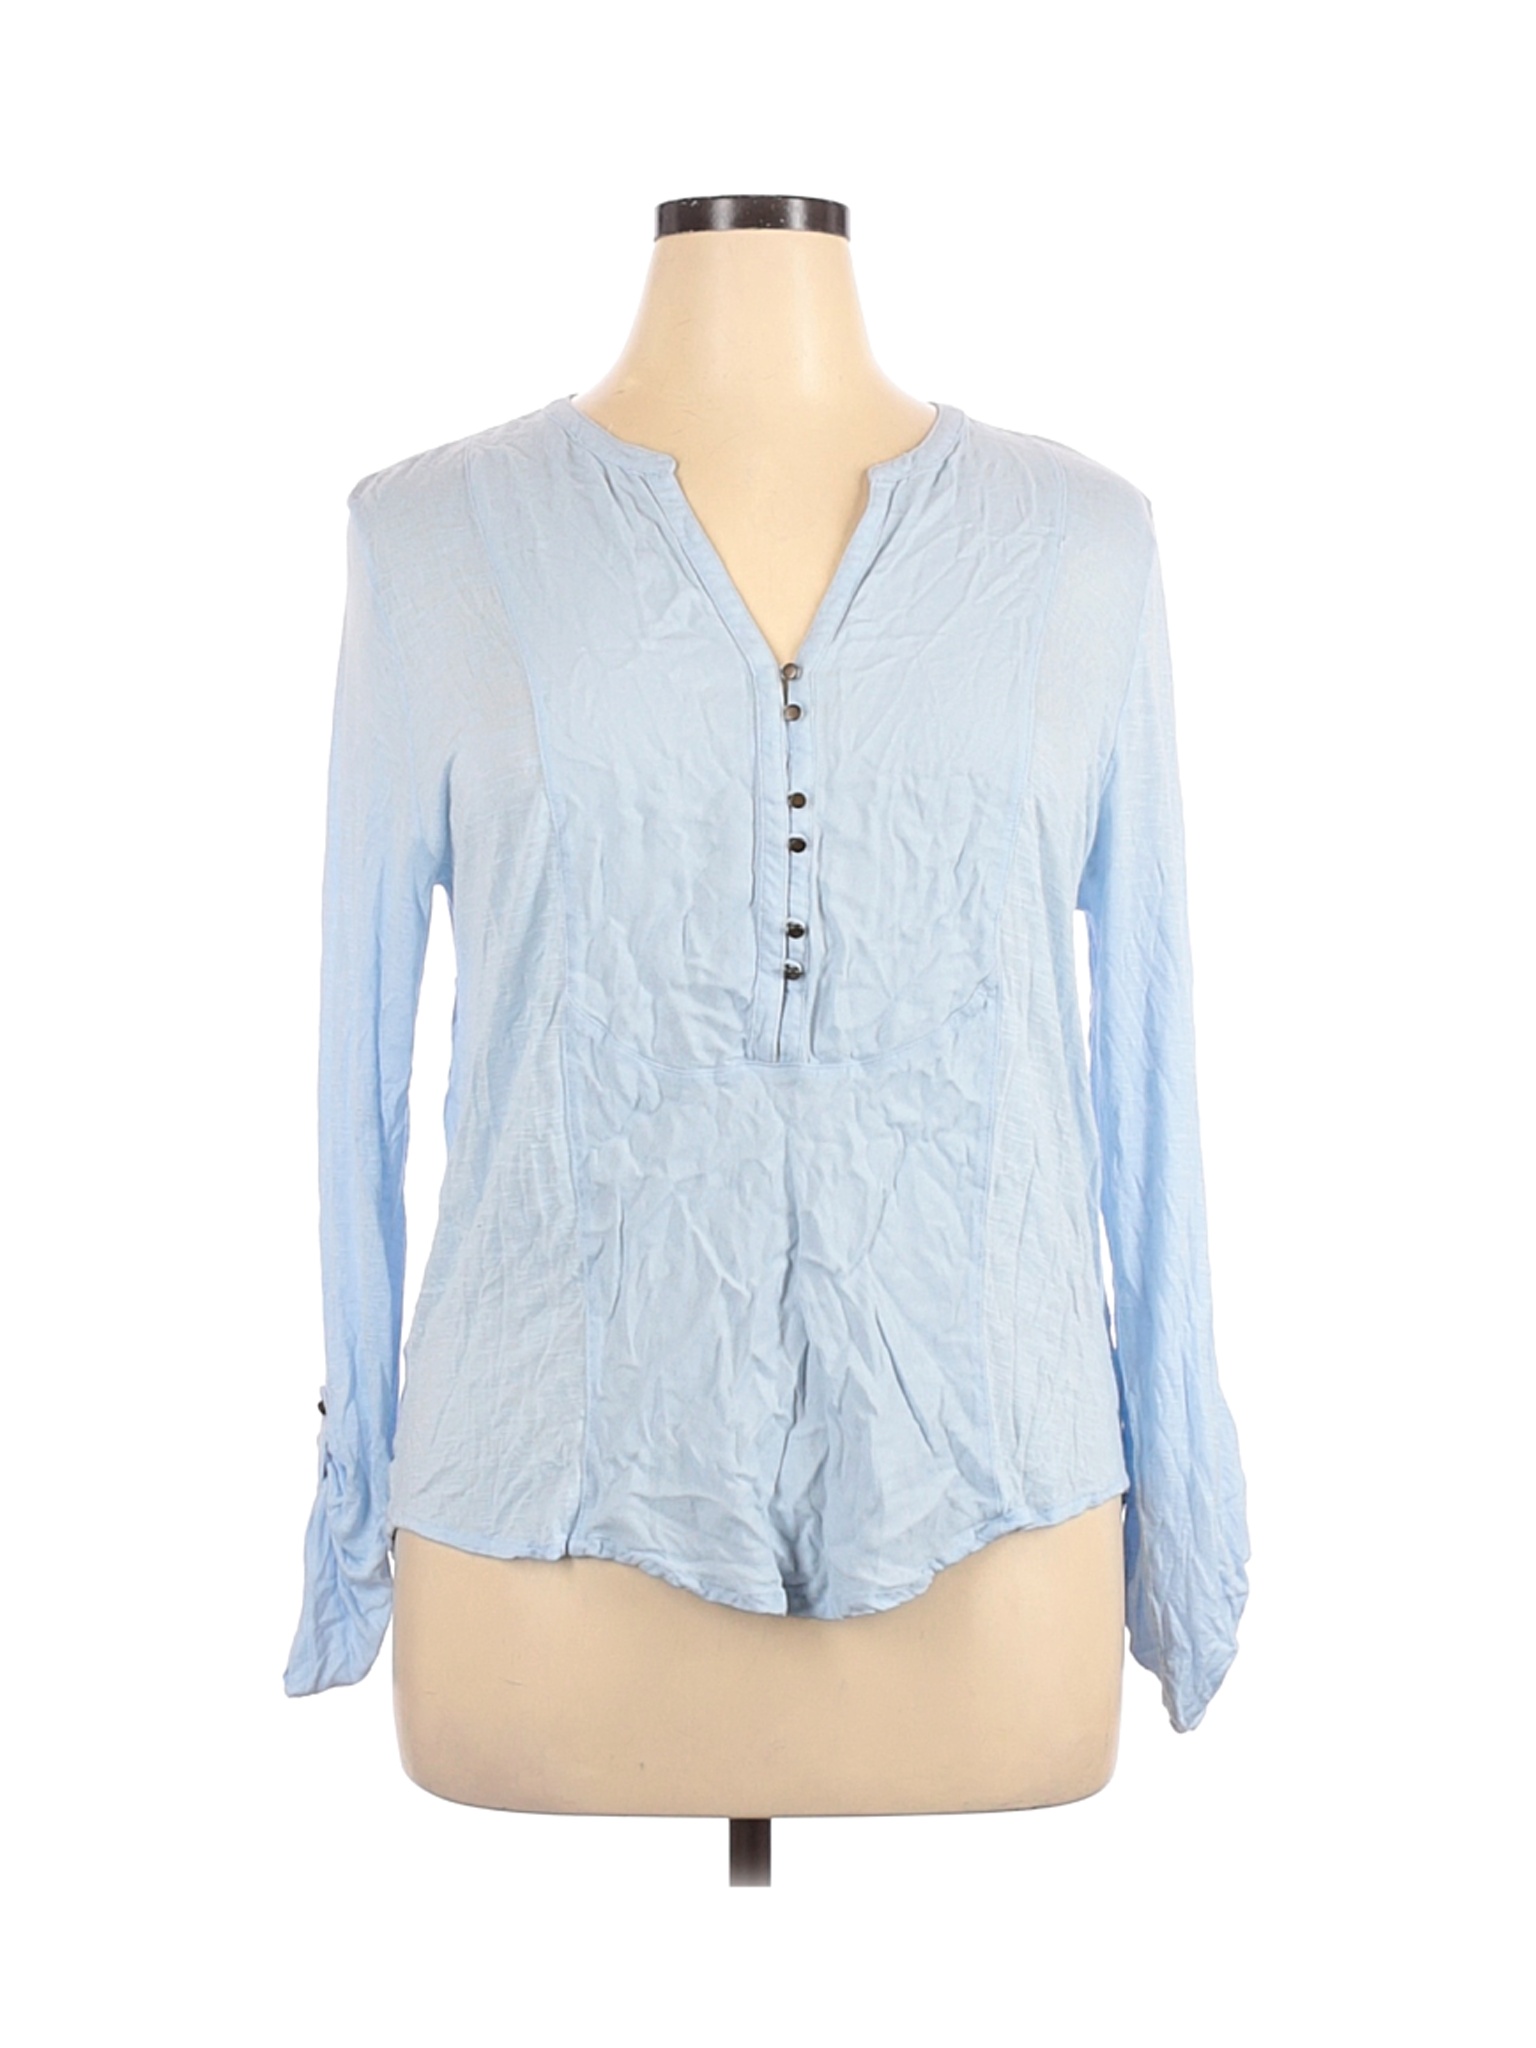 Lucky Brand Women Blue Long Sleeve Top XL | eBay